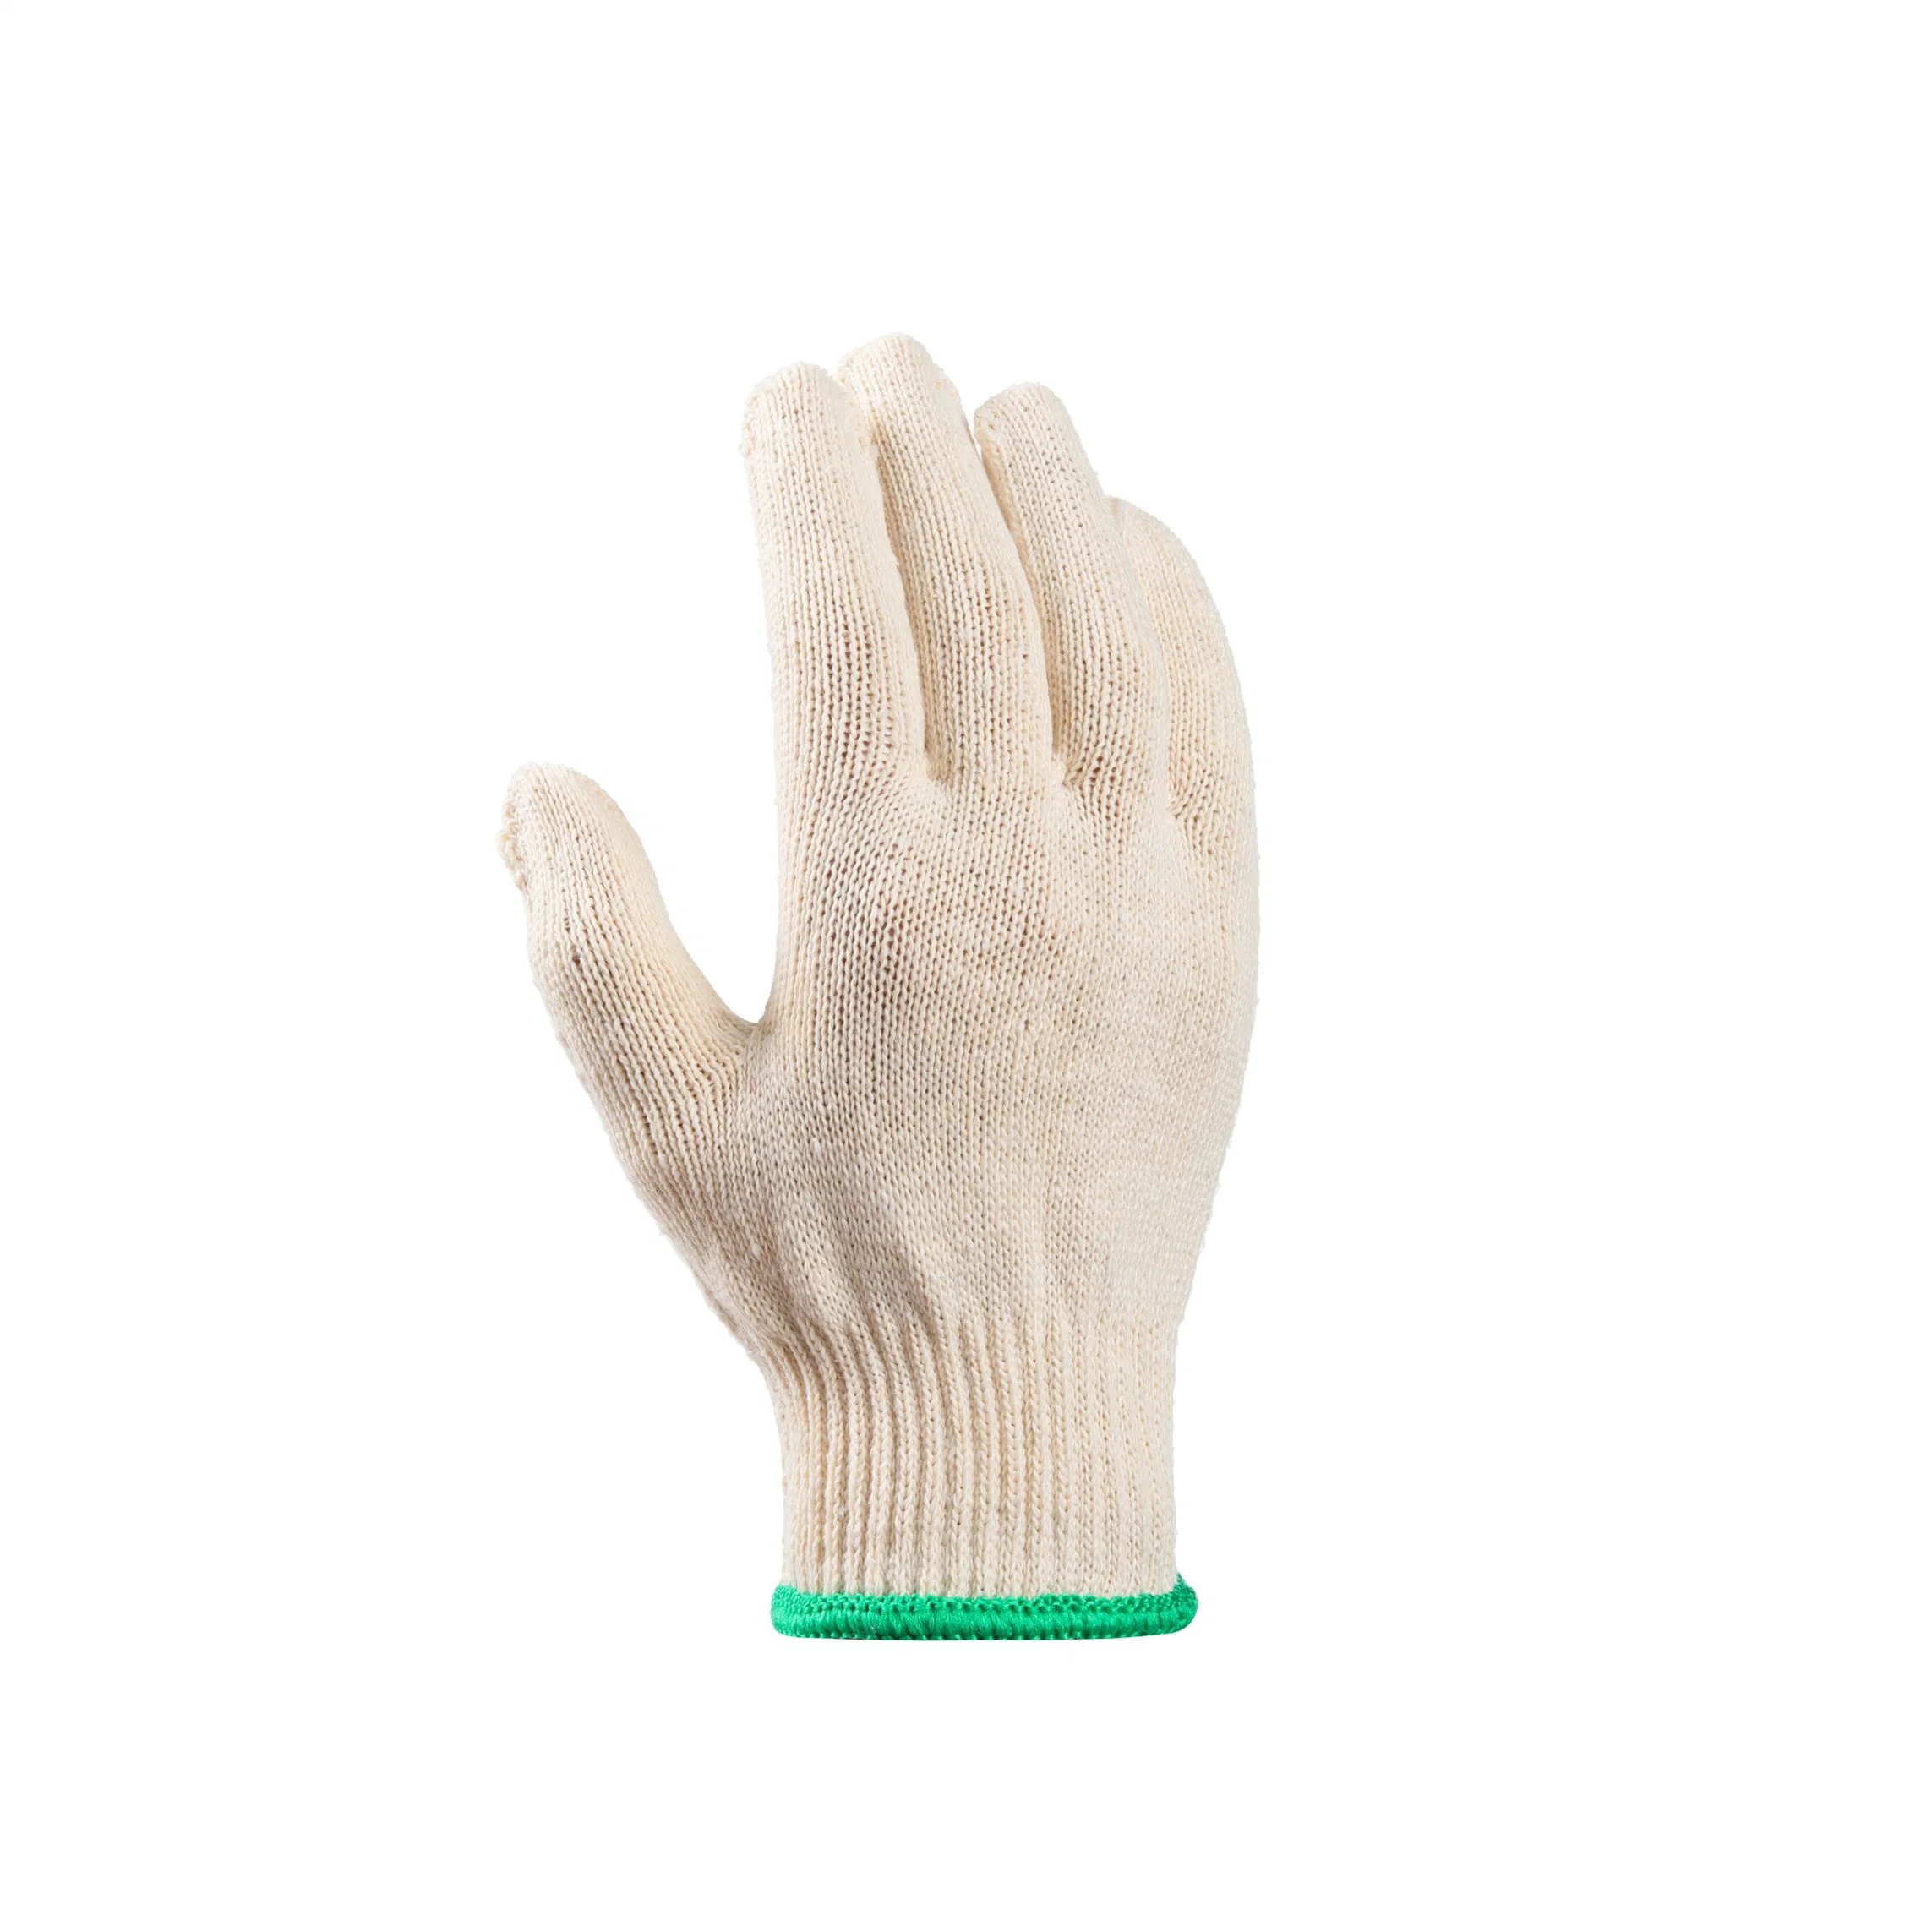 Guantes de seguridad de algodón blanco resistentes al desgaste de protección de manos